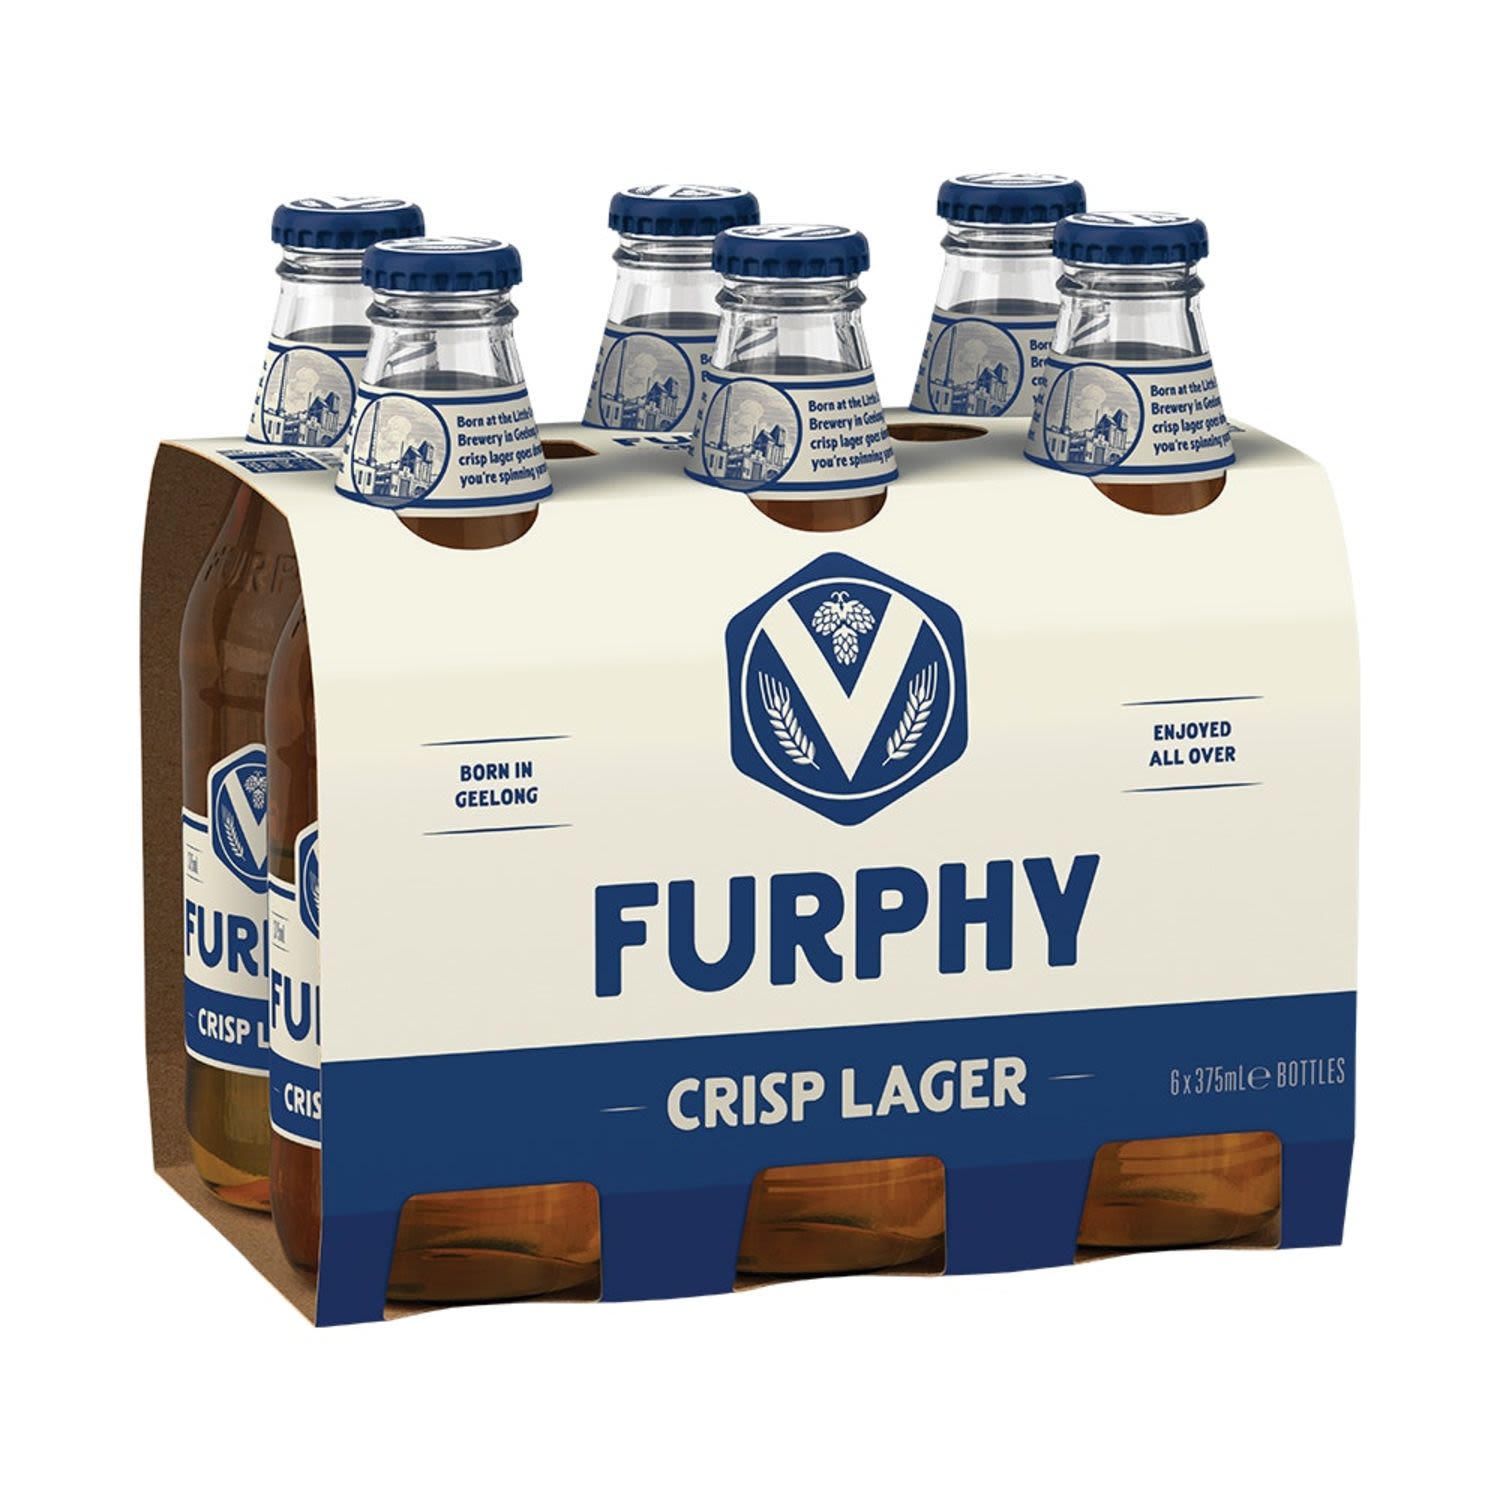 Furphy Crisp Lager Bottle 375mL 6 Pack